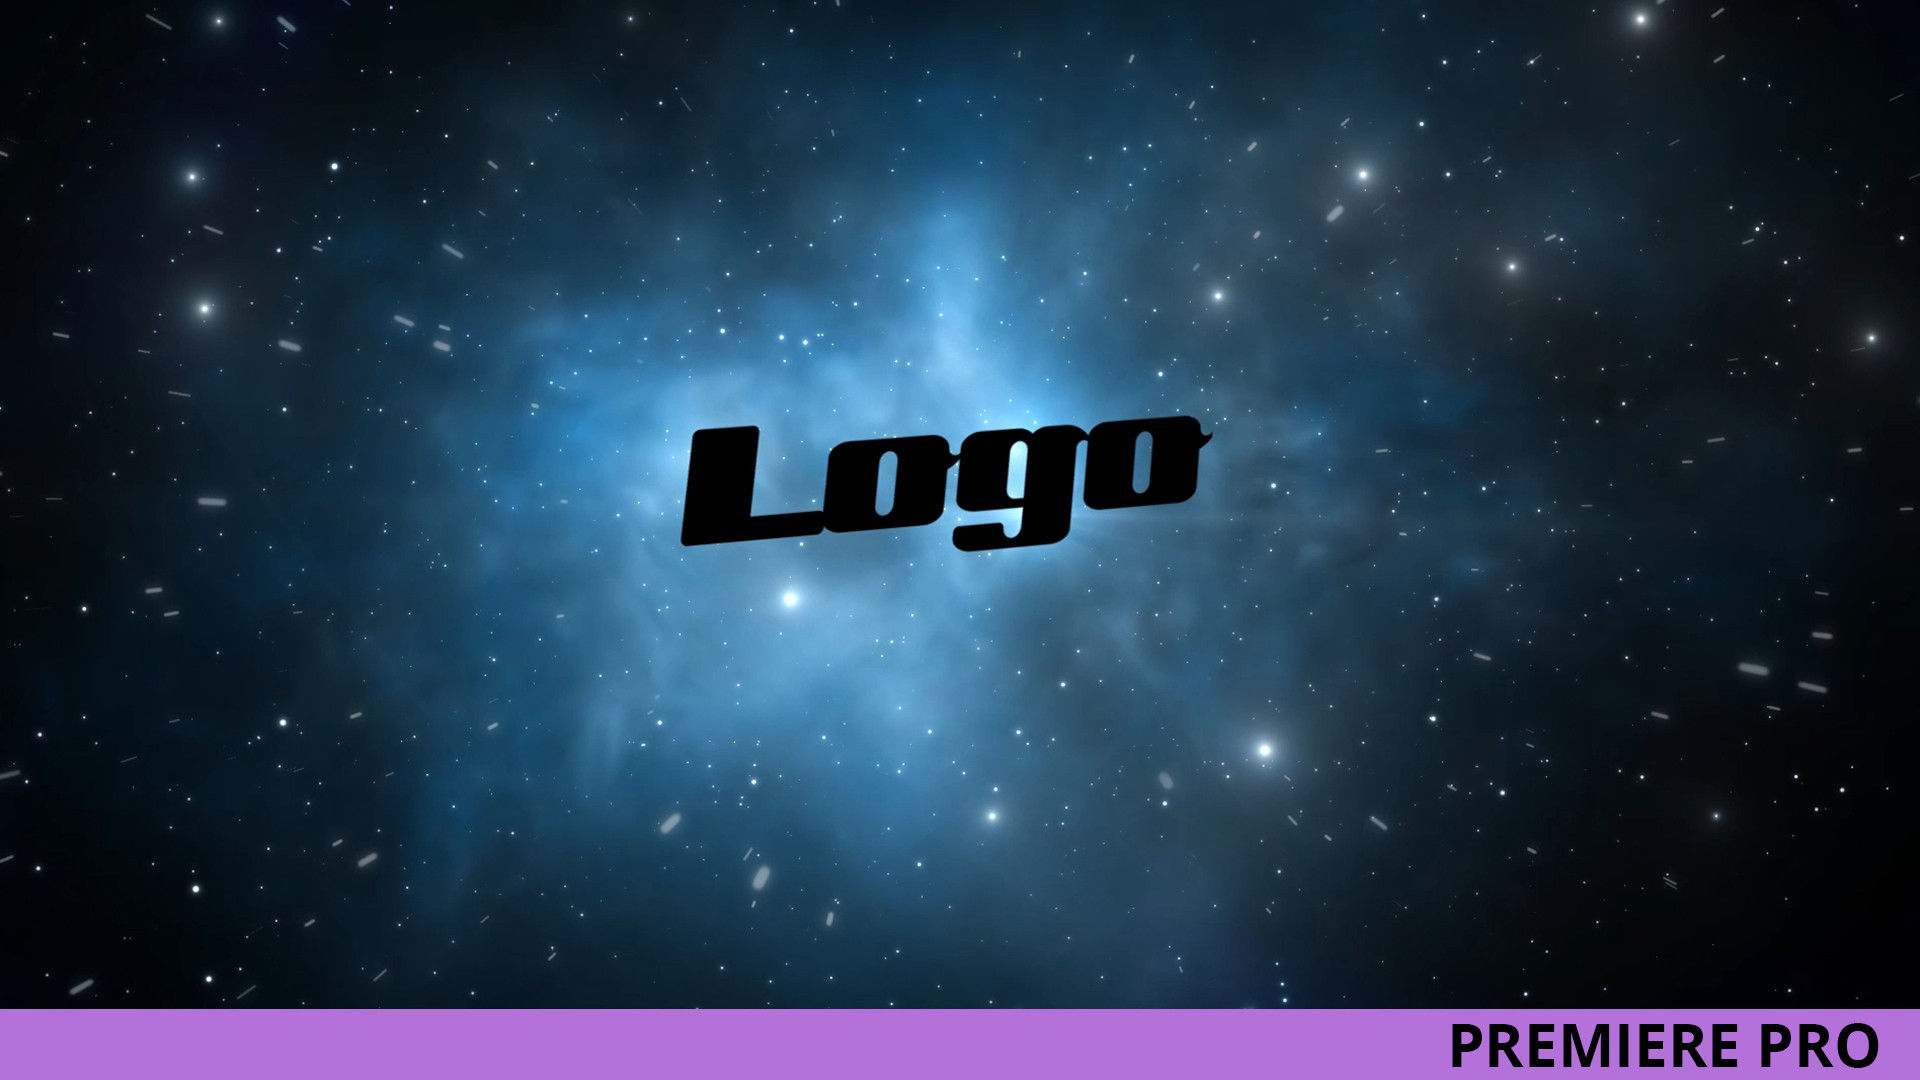 银河系太空标志LOGO展示PR模板